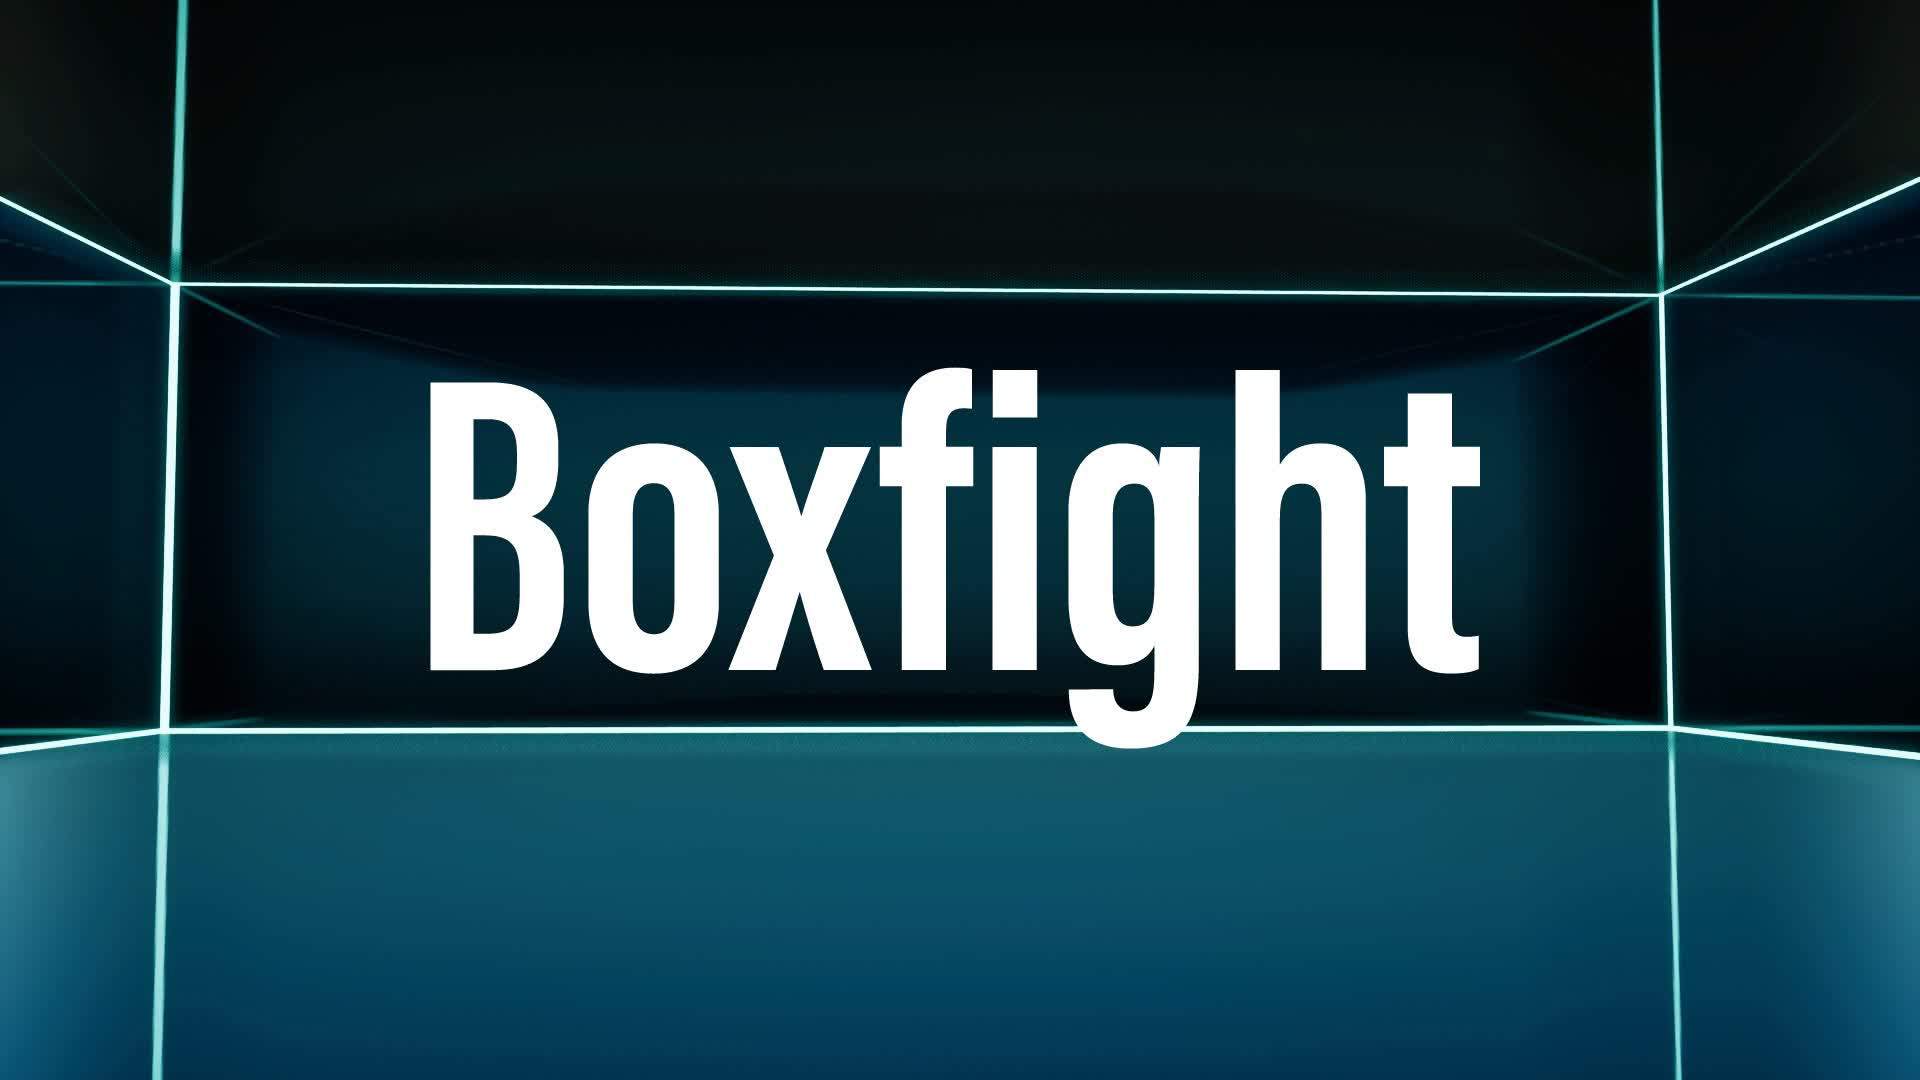 JDB Boxfight